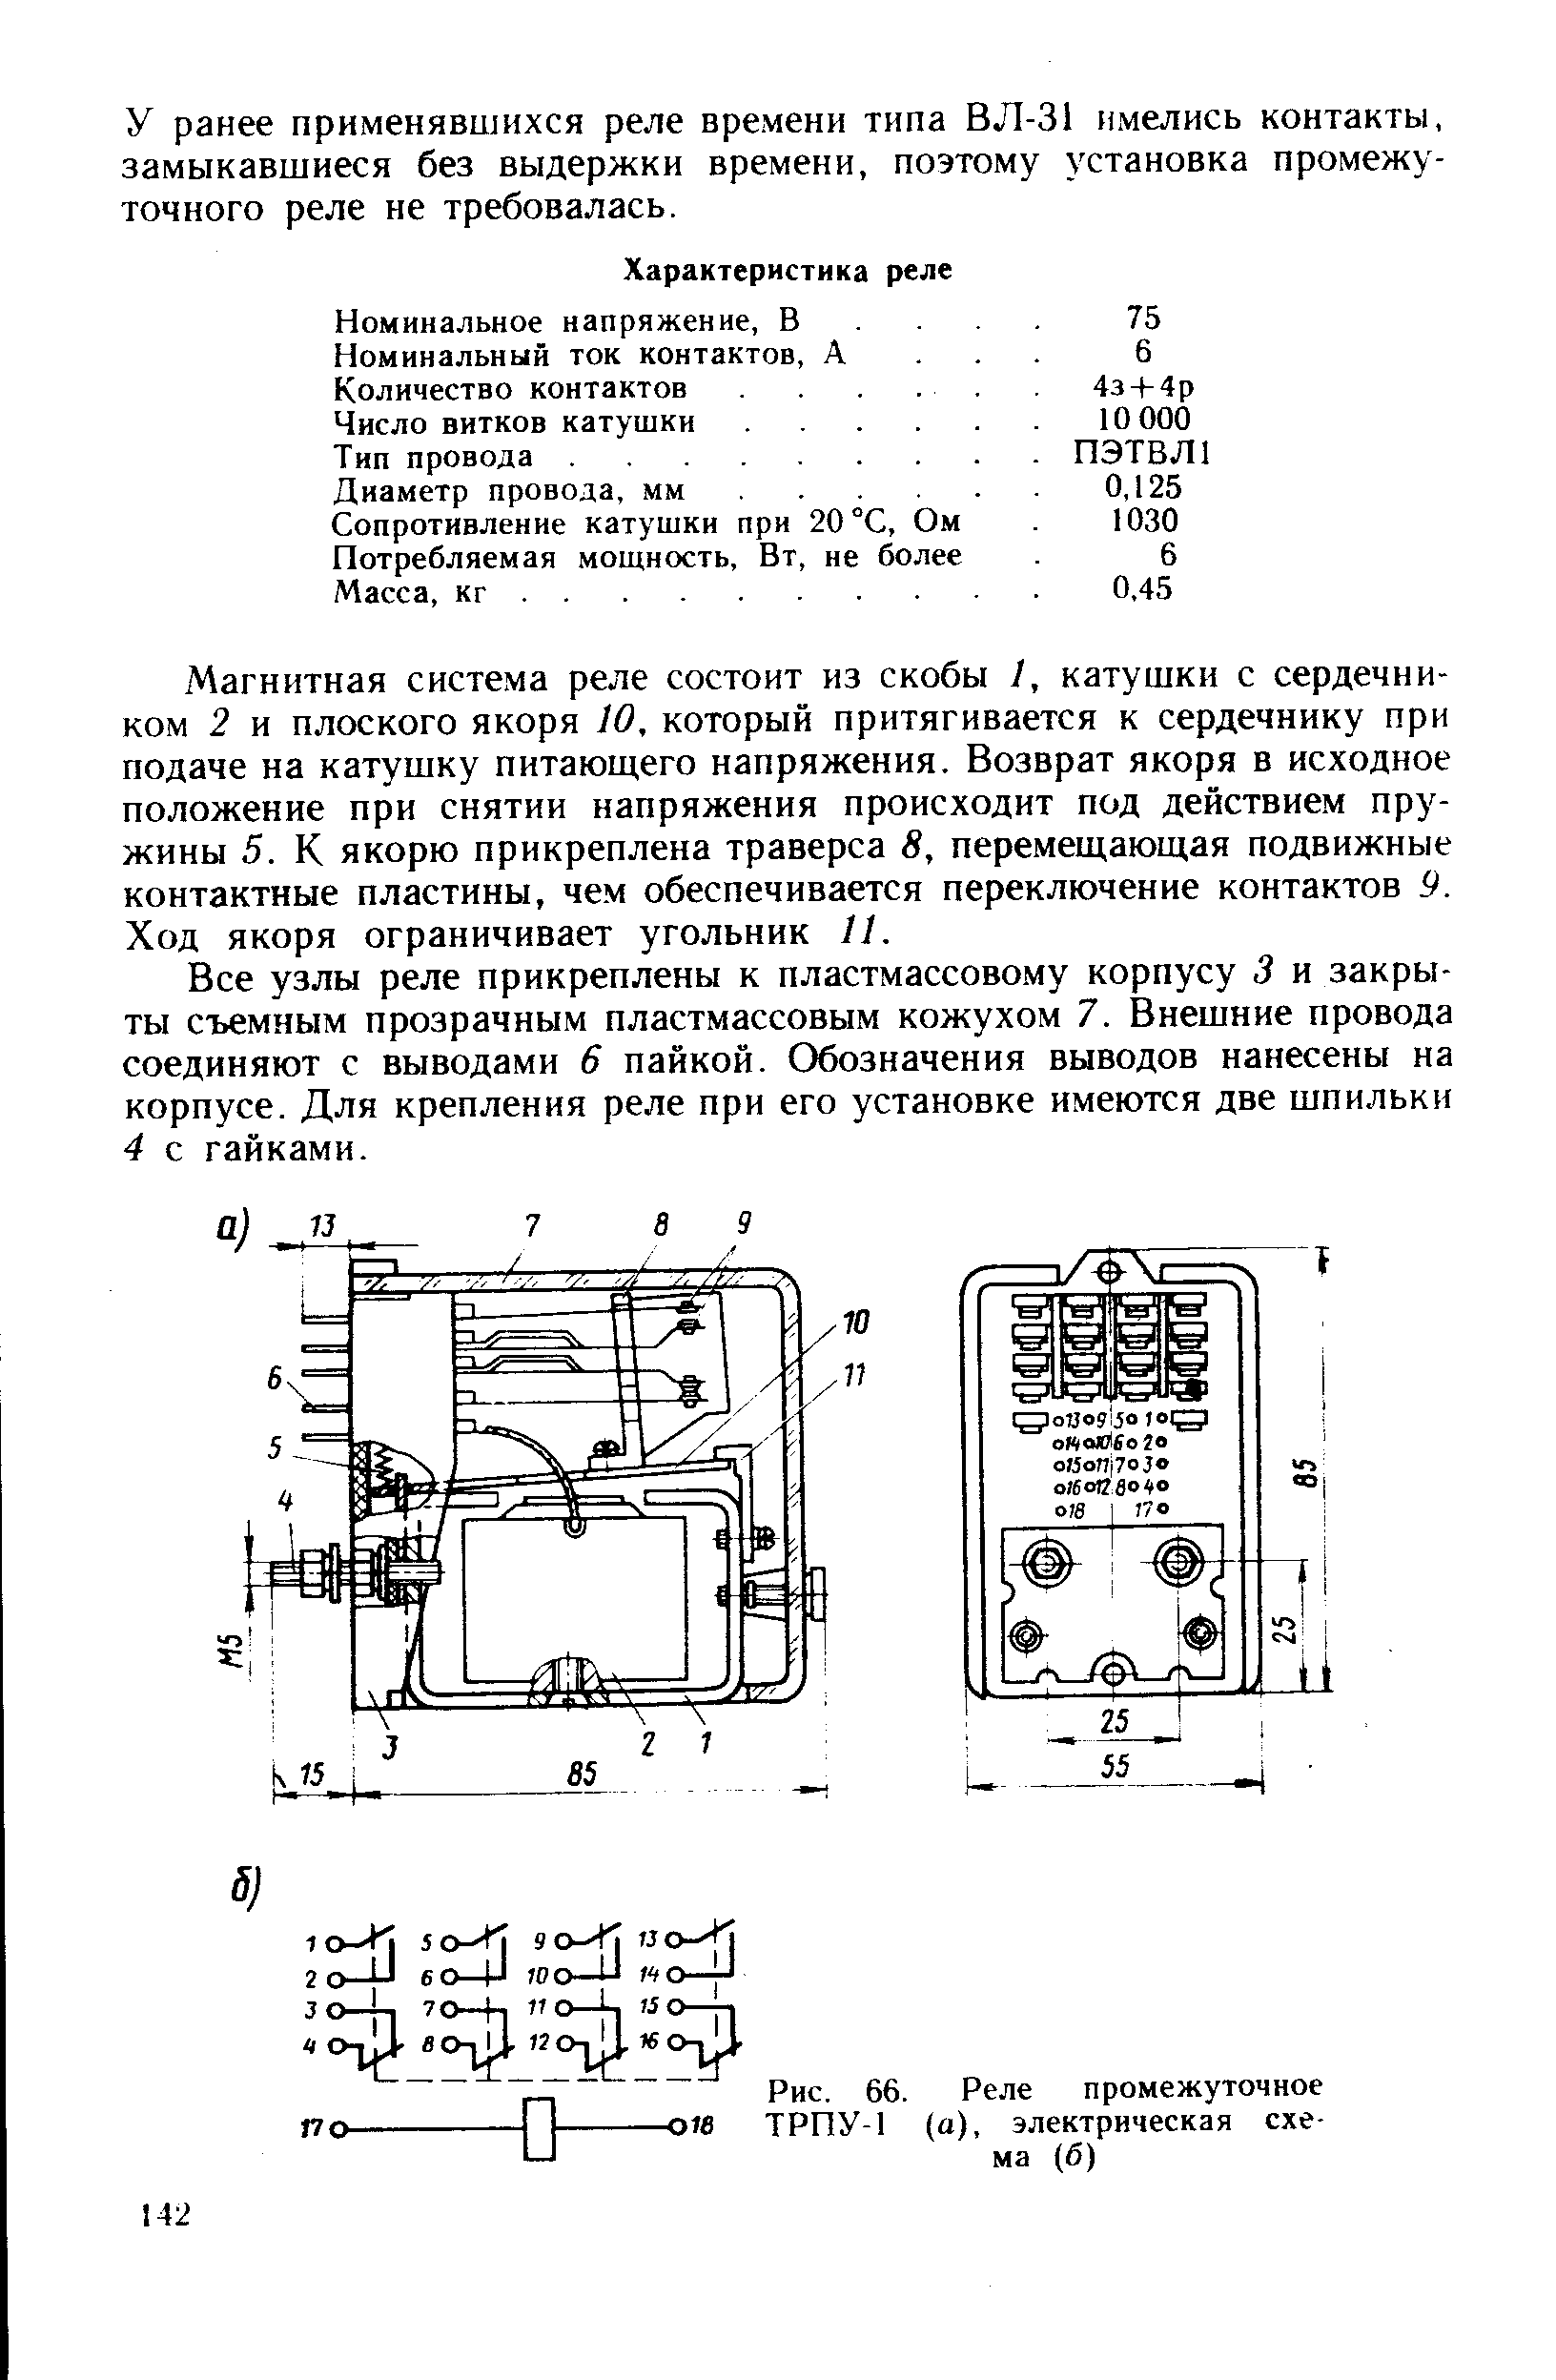 Рис. 66. Реле промежуточное ТРПУ-1 (а), электрическая схема (б)
